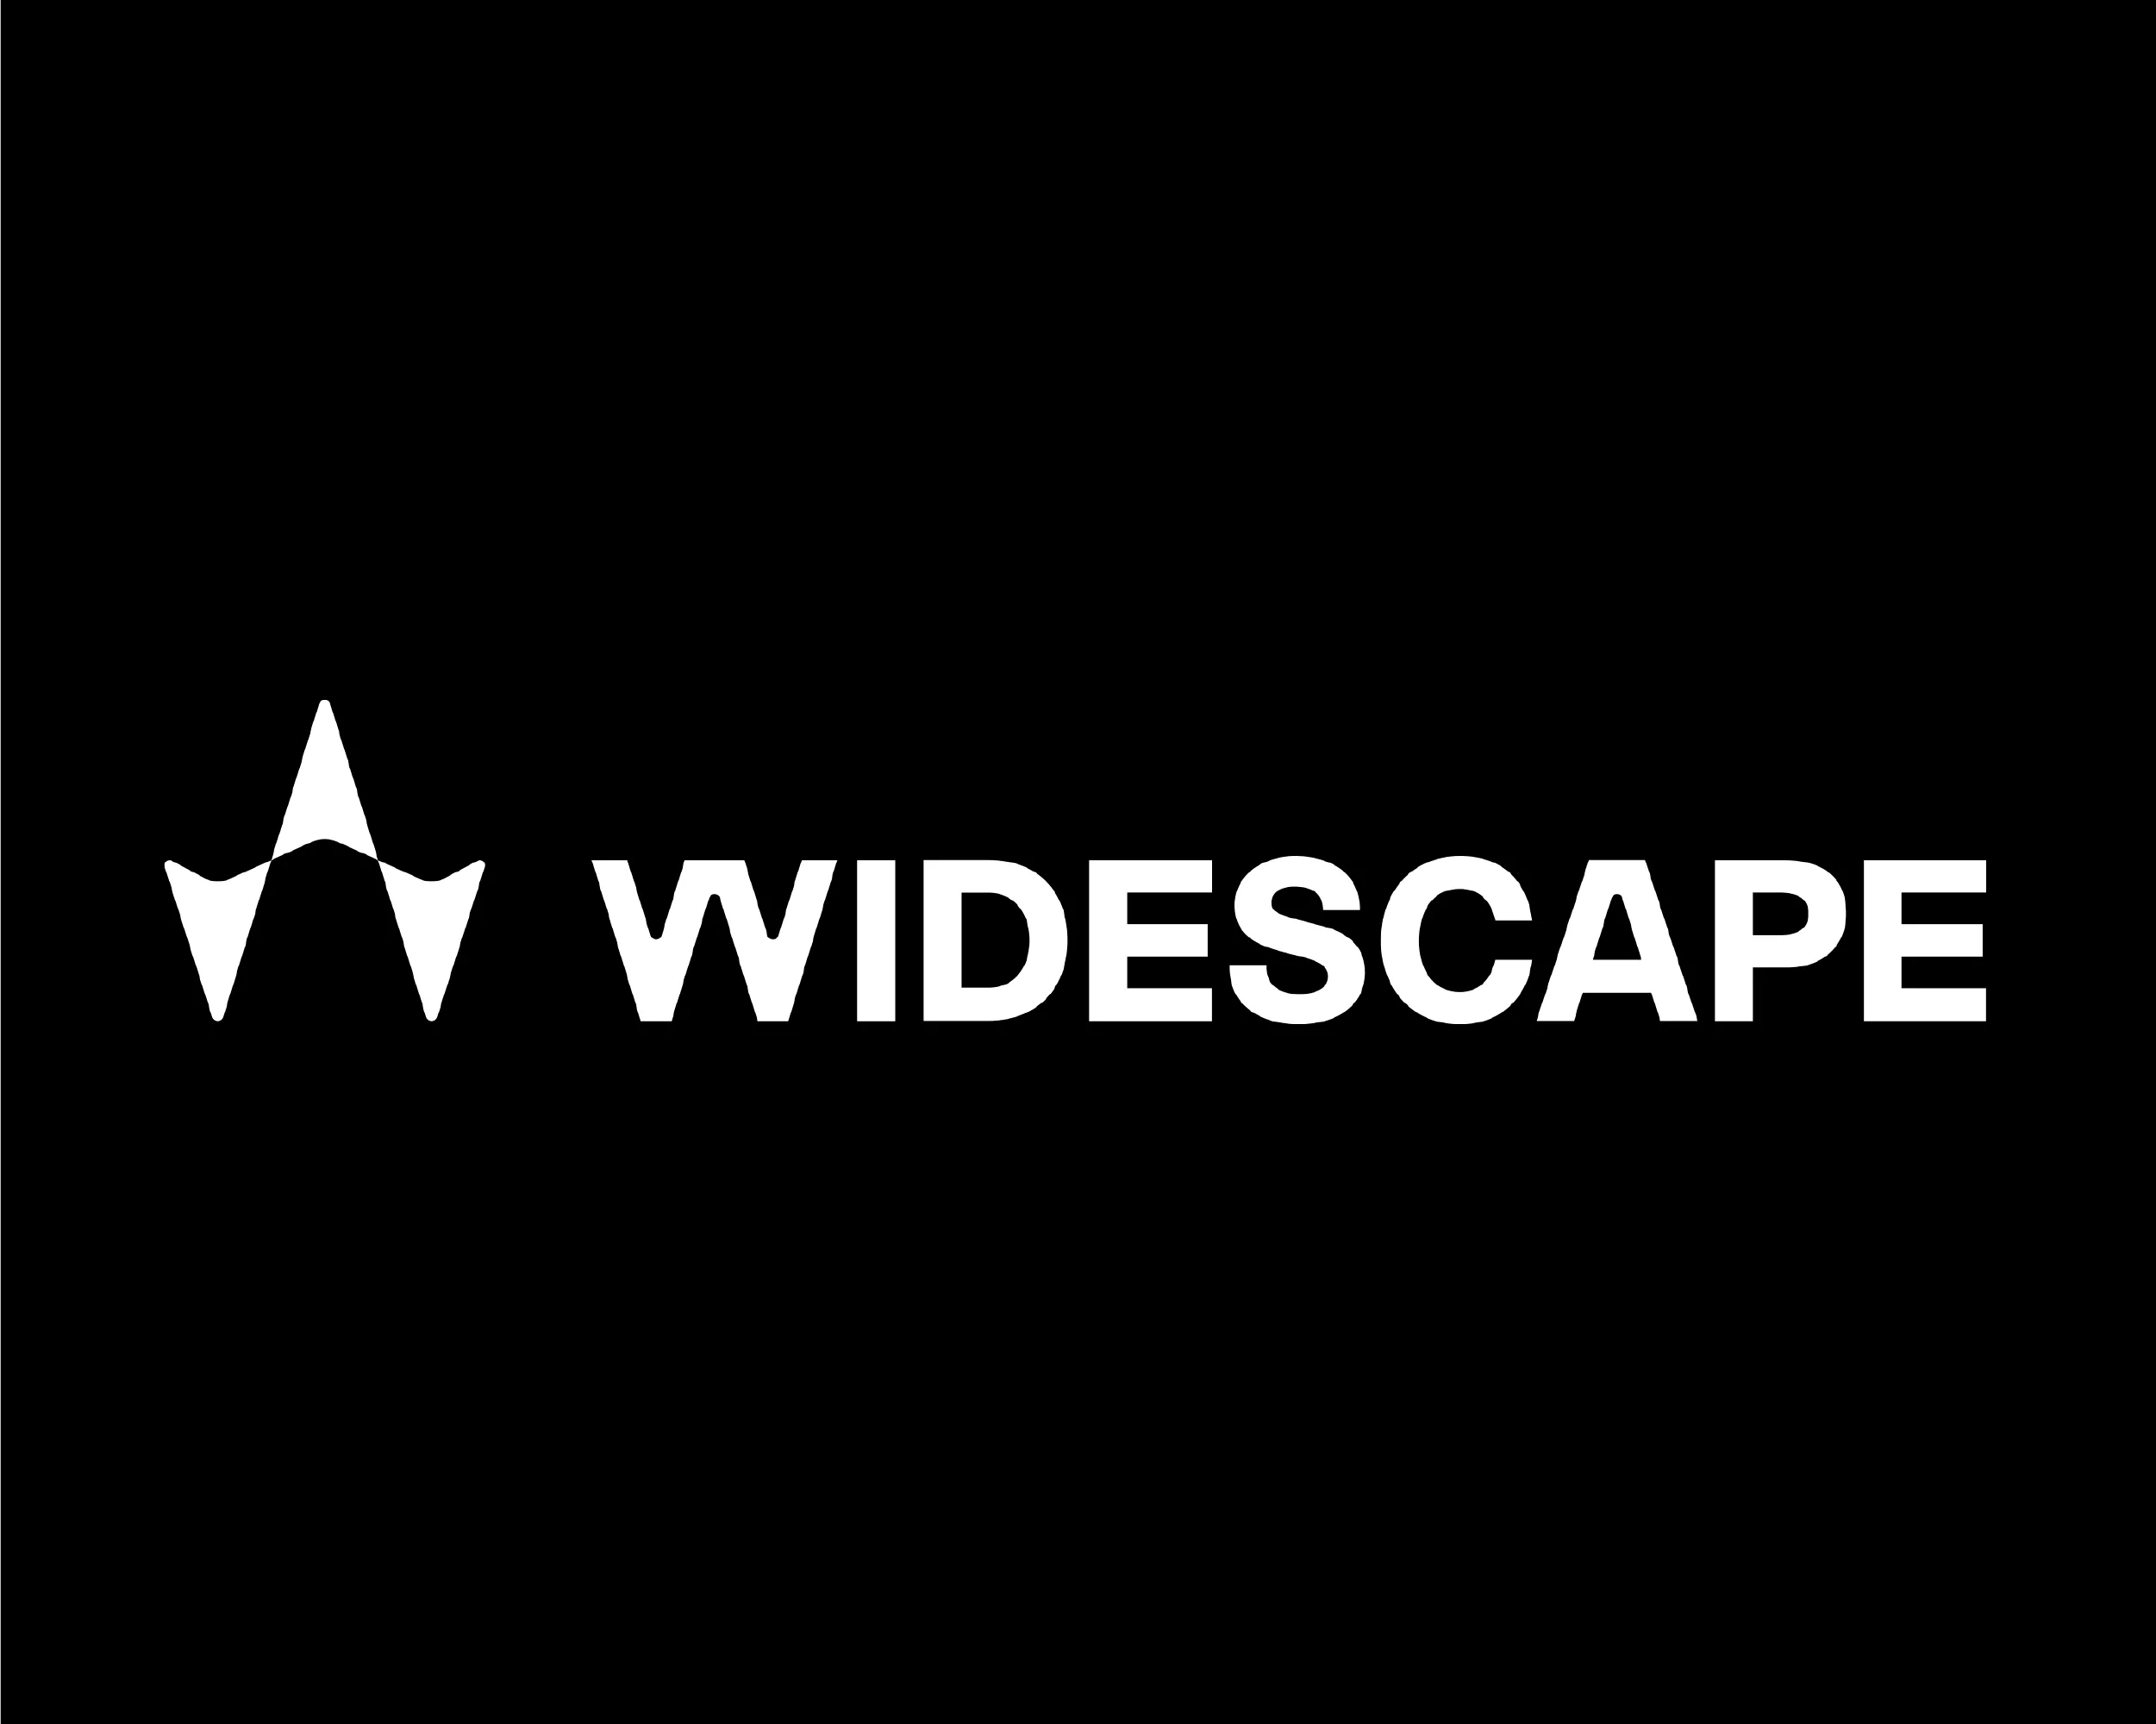 Widescape